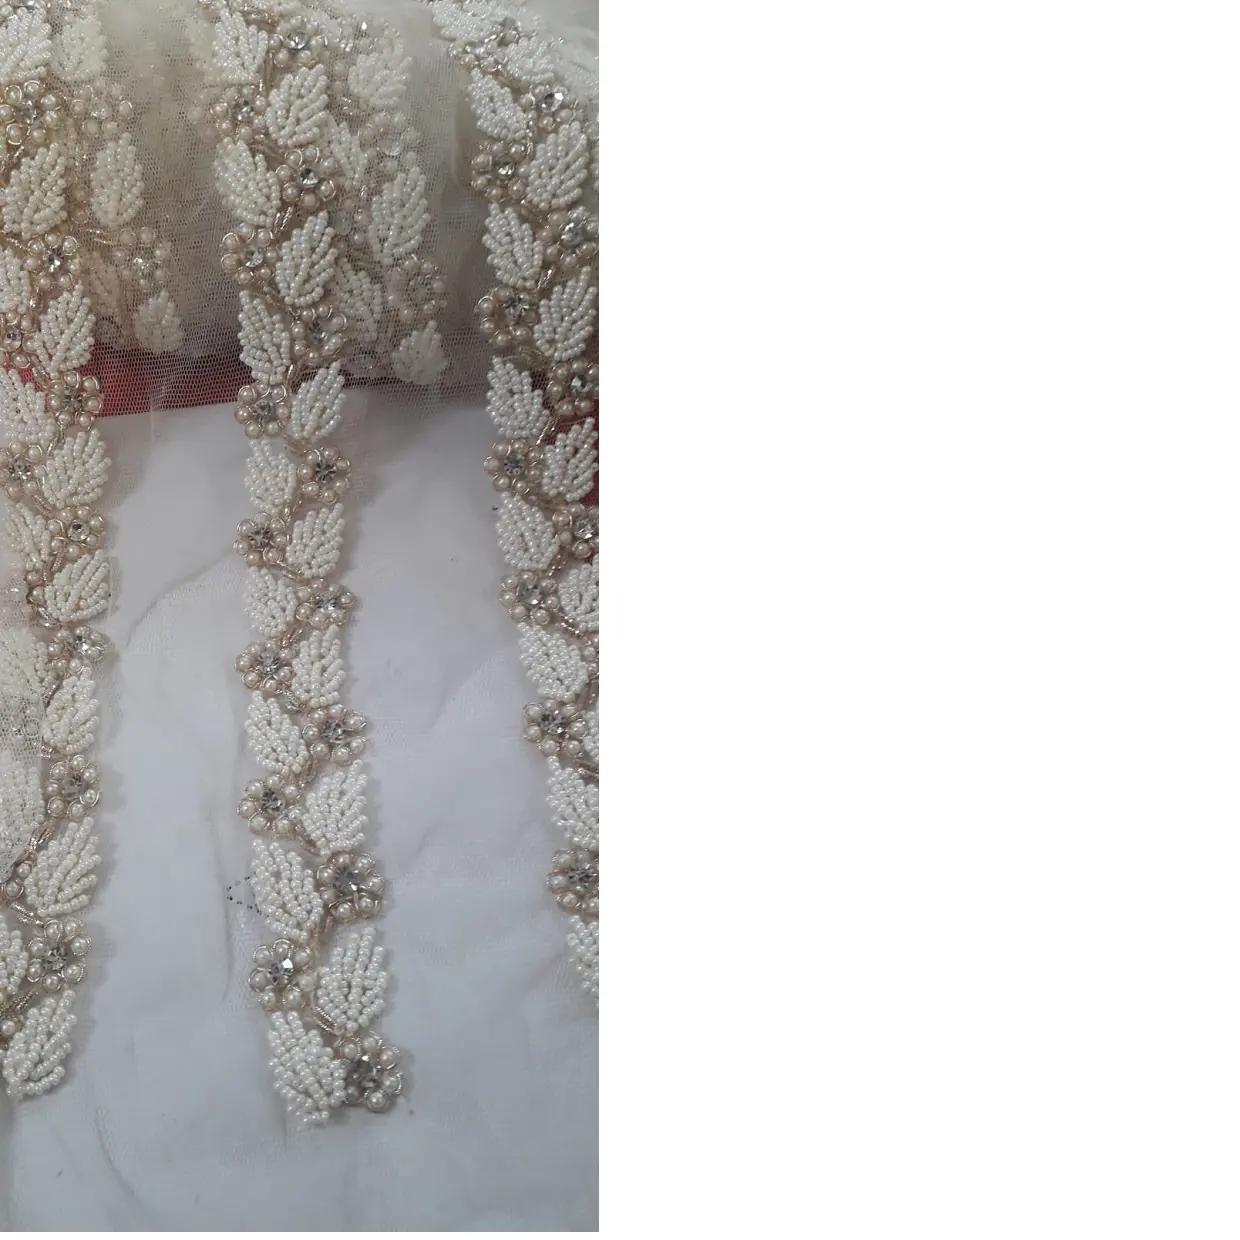 Encajes bordados con cuentas, adecuado para diseñadores de vestidos de boda, disponible en color blanco, ideal para reventa por embellecedores de tiendas